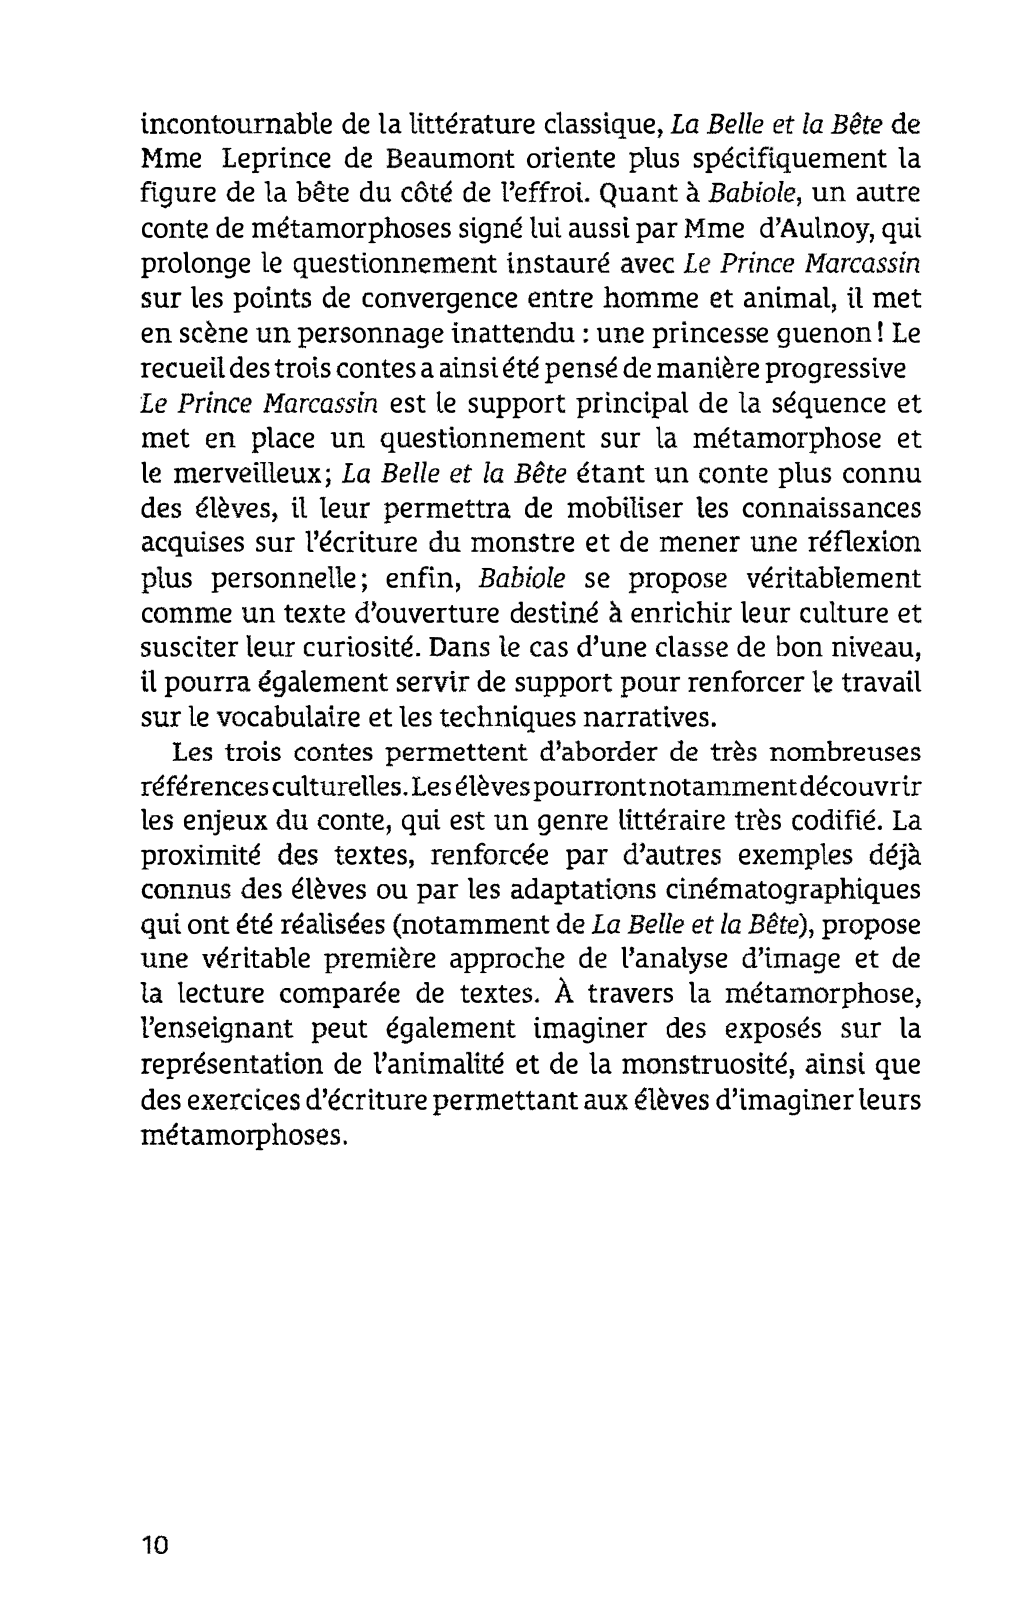 Prévisualisation du document Madame d’Aulnoy Le Prince Marcassin